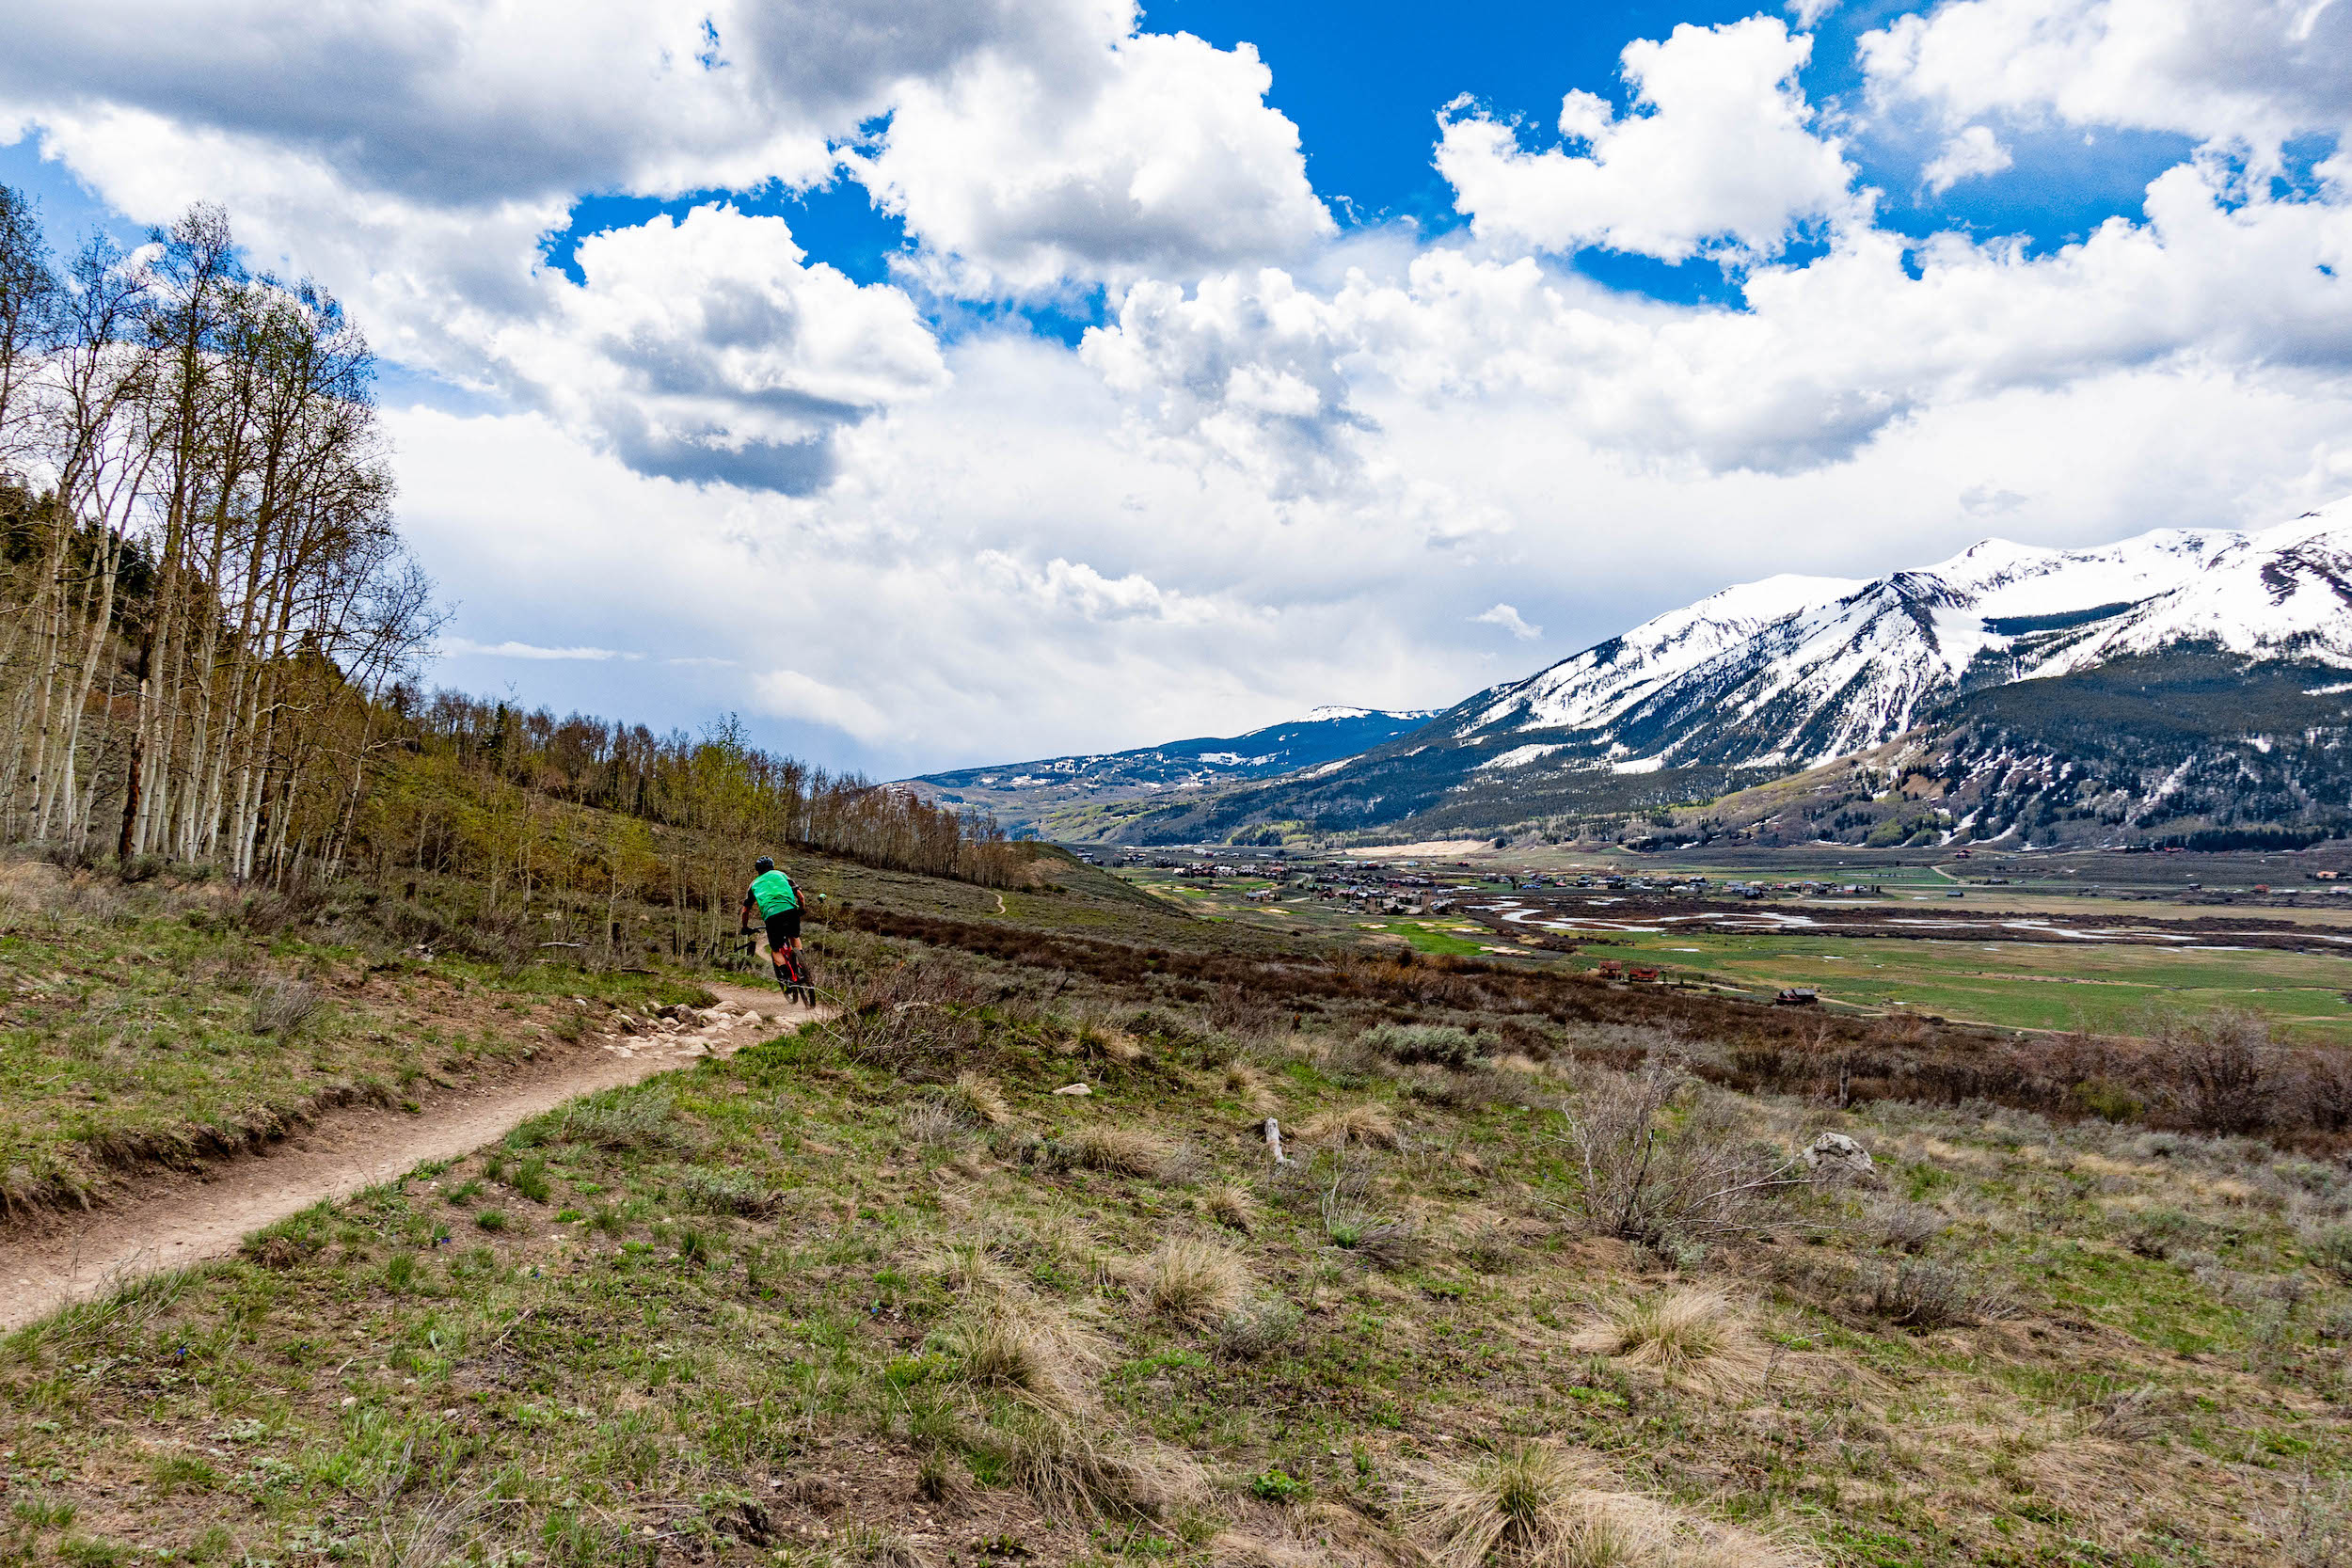 mountain biking on a dirt trail